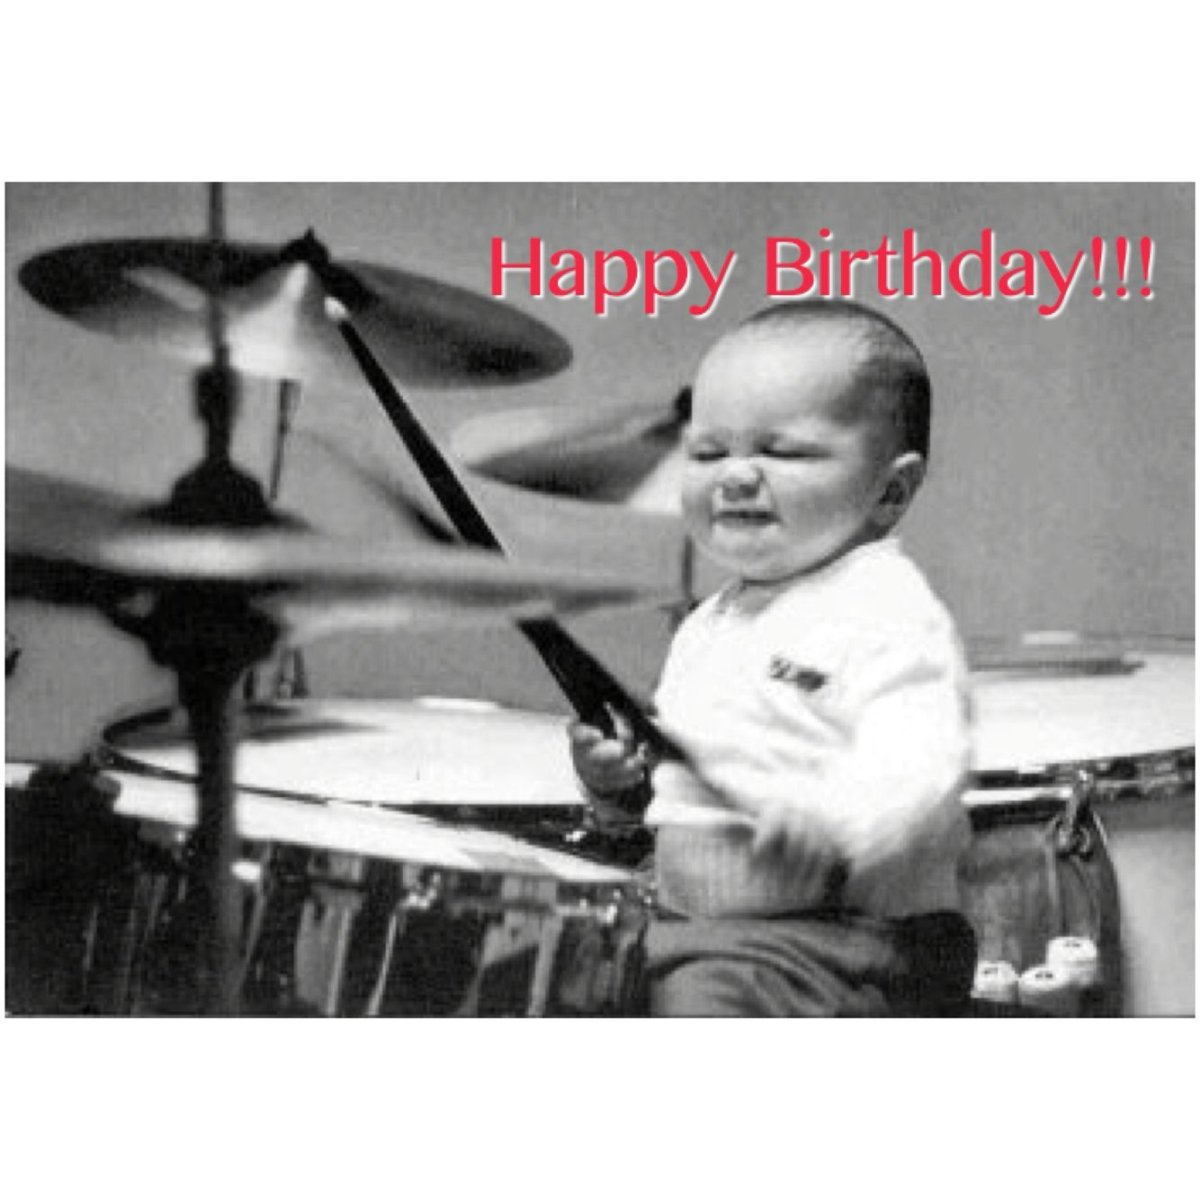 смотри у этого беспантового барабанщика сегодня днюха!! с днем рождения тебя джон.